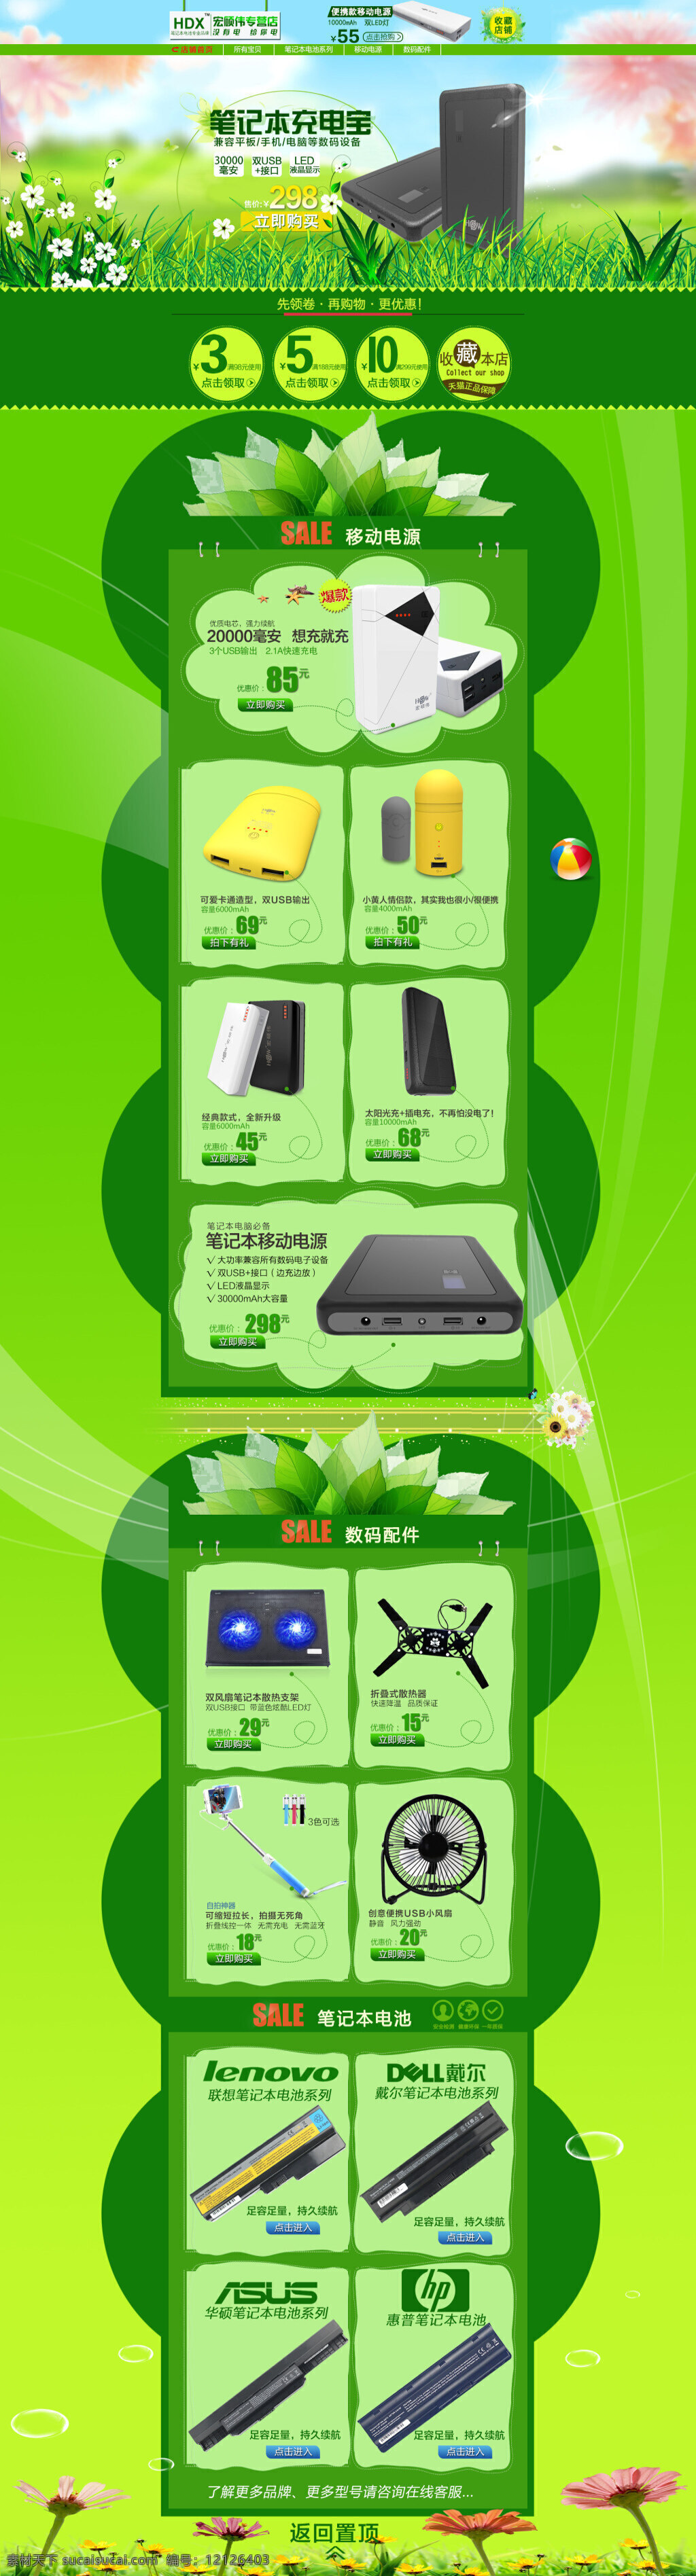 夏季 天猫 淘宝 首页 分层 模版 格式 热卖 手机专享 首页模版 阳光 绿色 分类 移动电源 笔记本电池